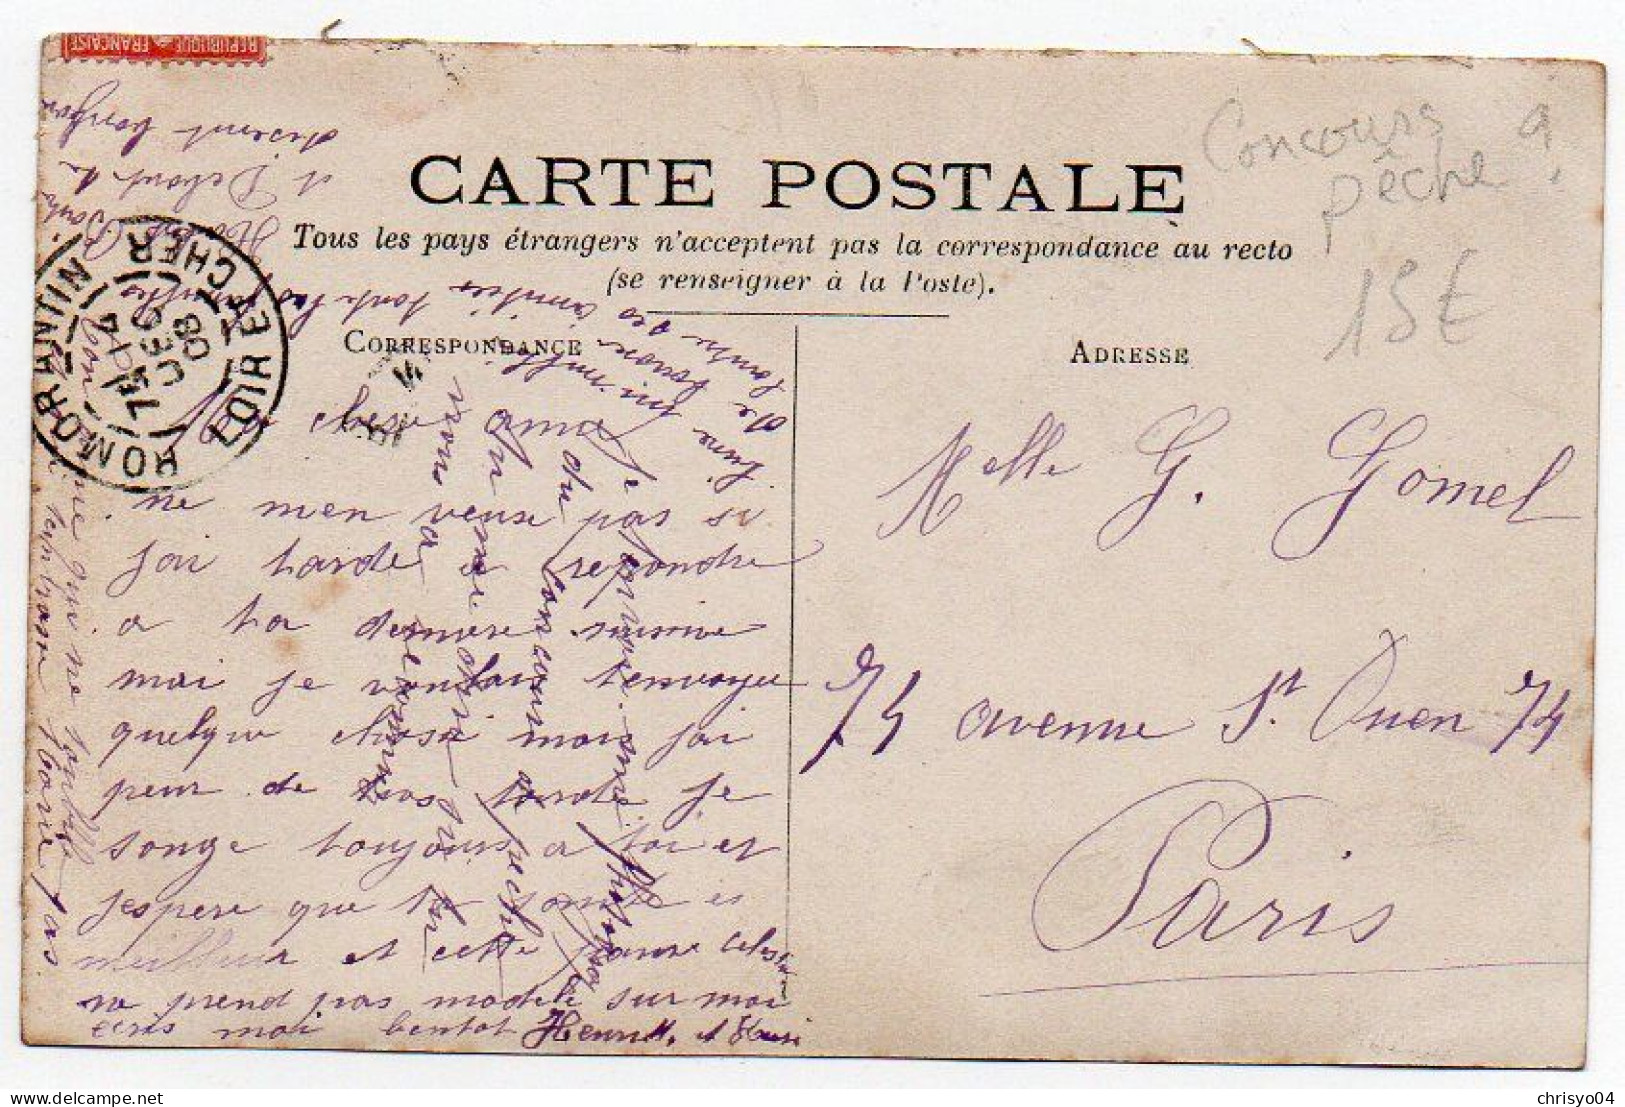 4V4Sb   Carte Photo Concours De Pêche à La Ligne Envoyée De Romorantin En 1908 - Fishing